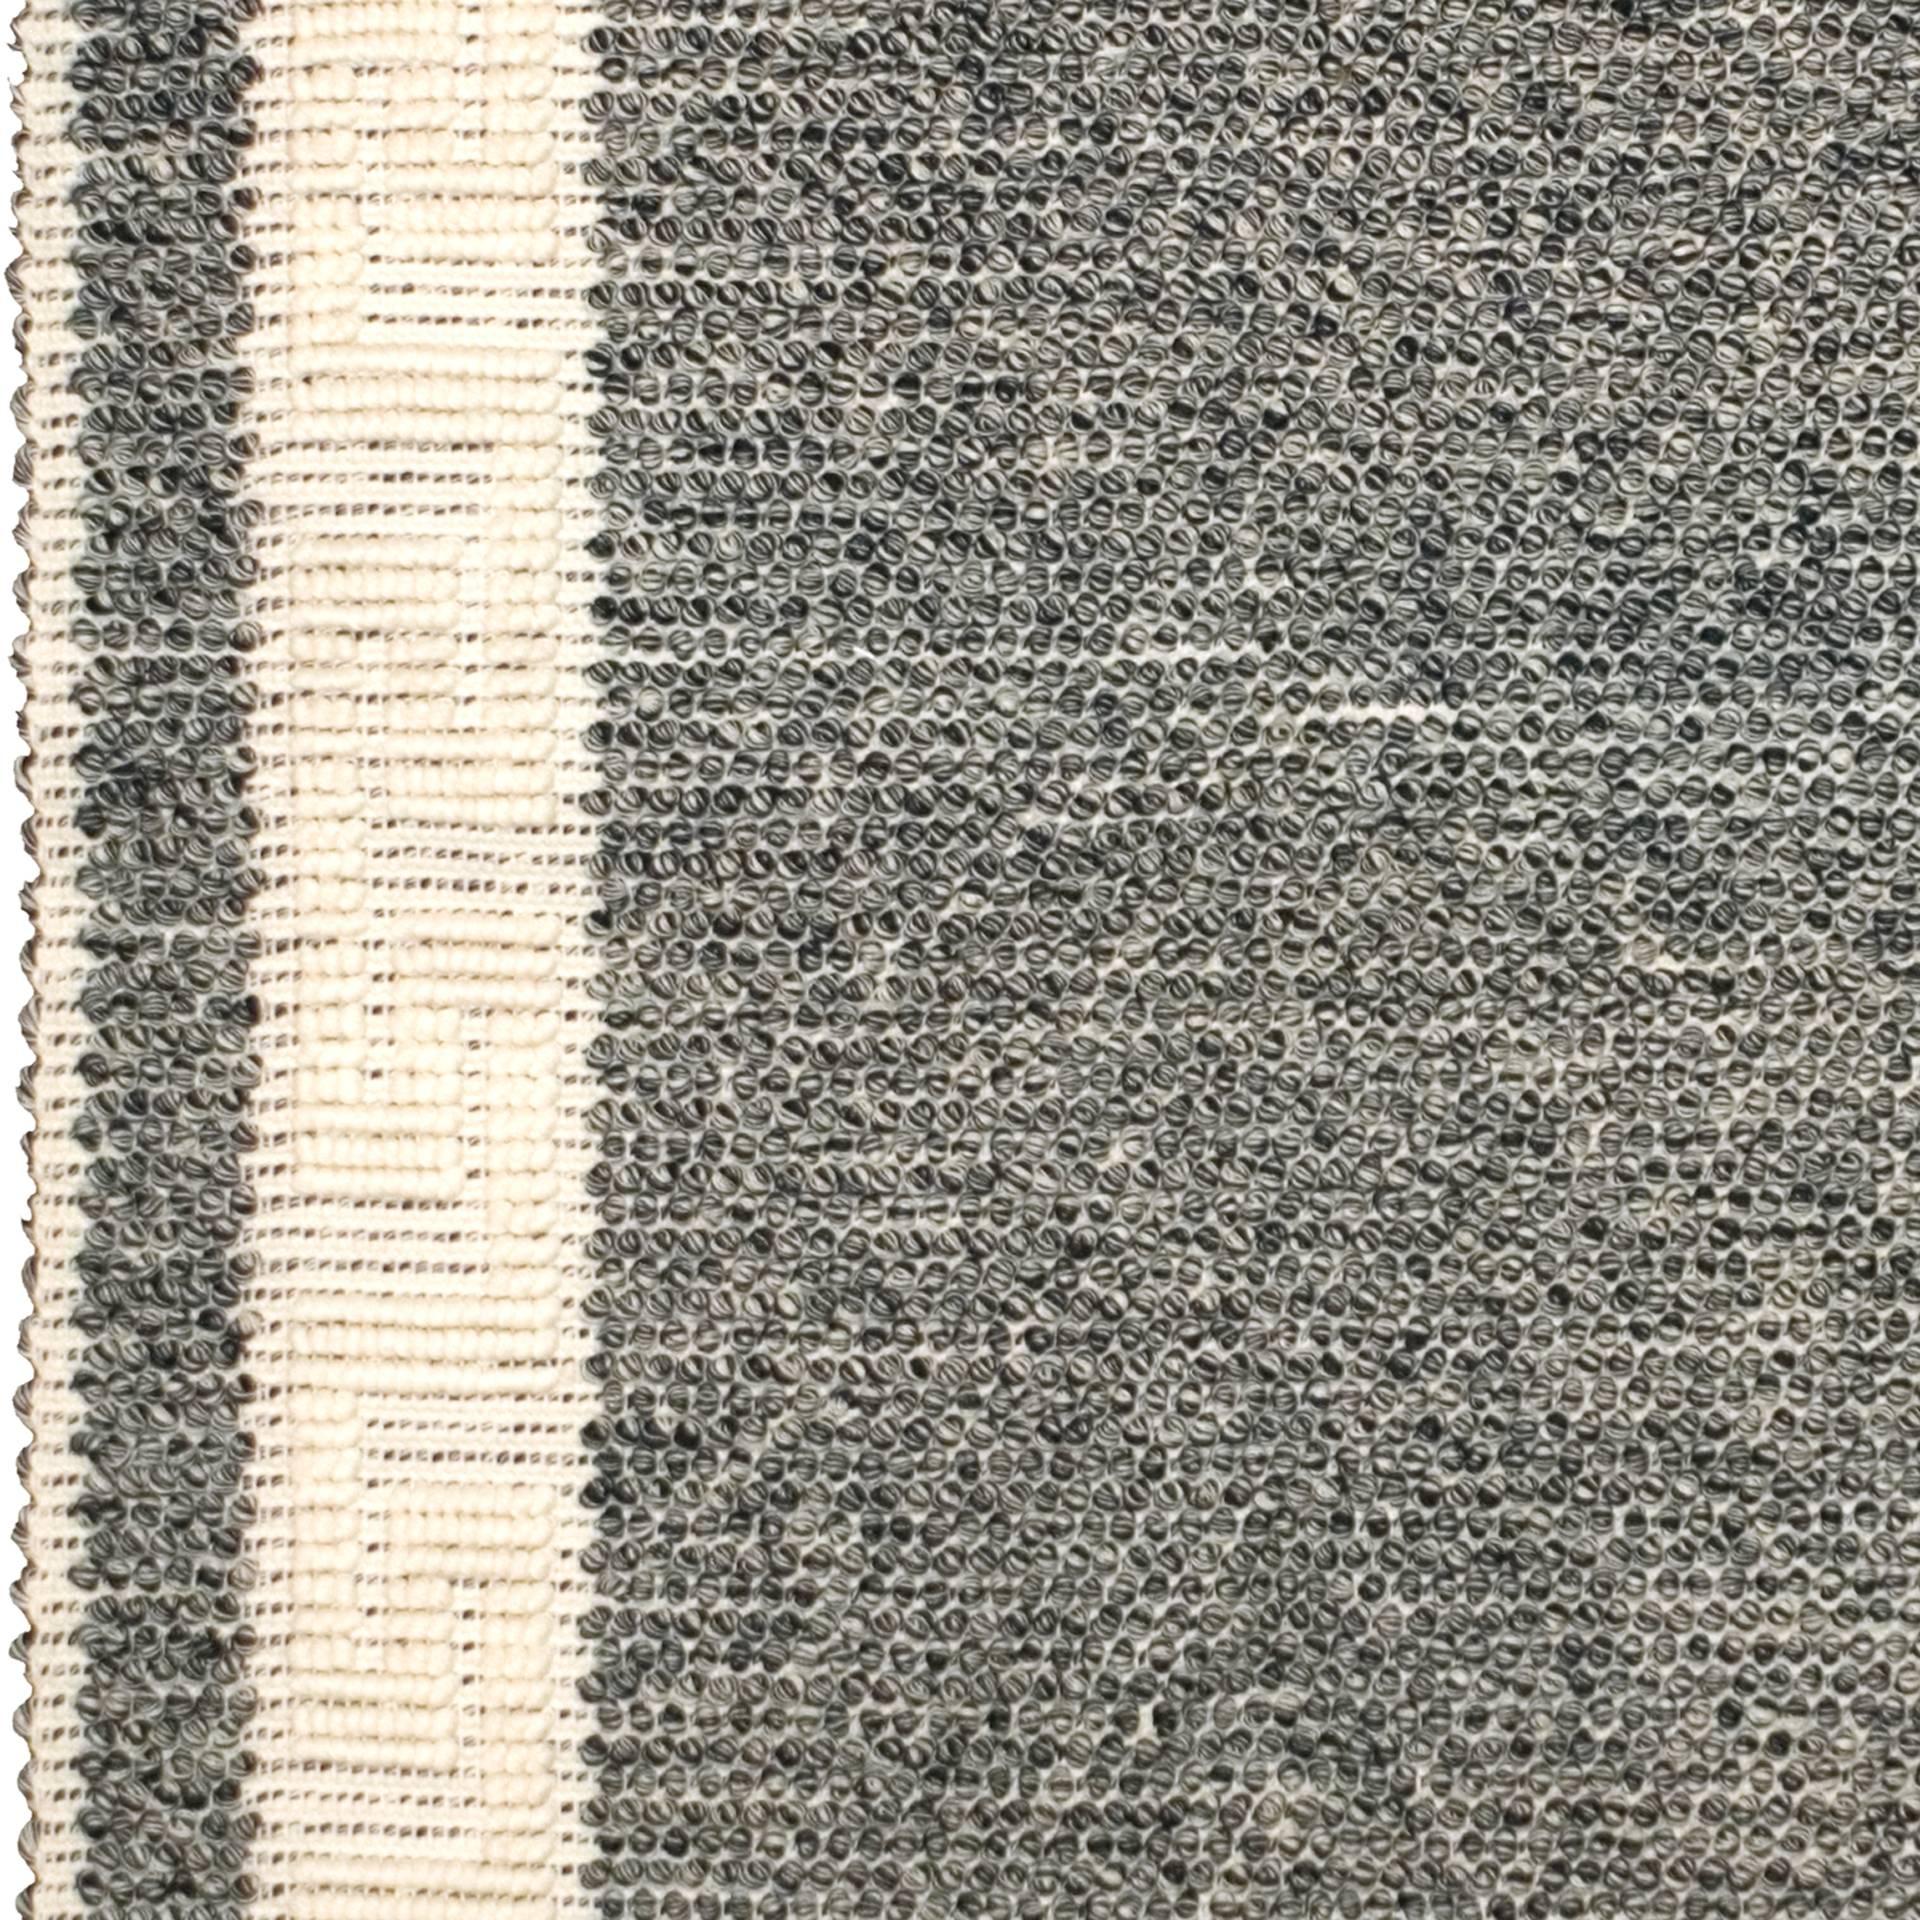 Hand-Woven Contemporary Sardinian Handwoven Carpet